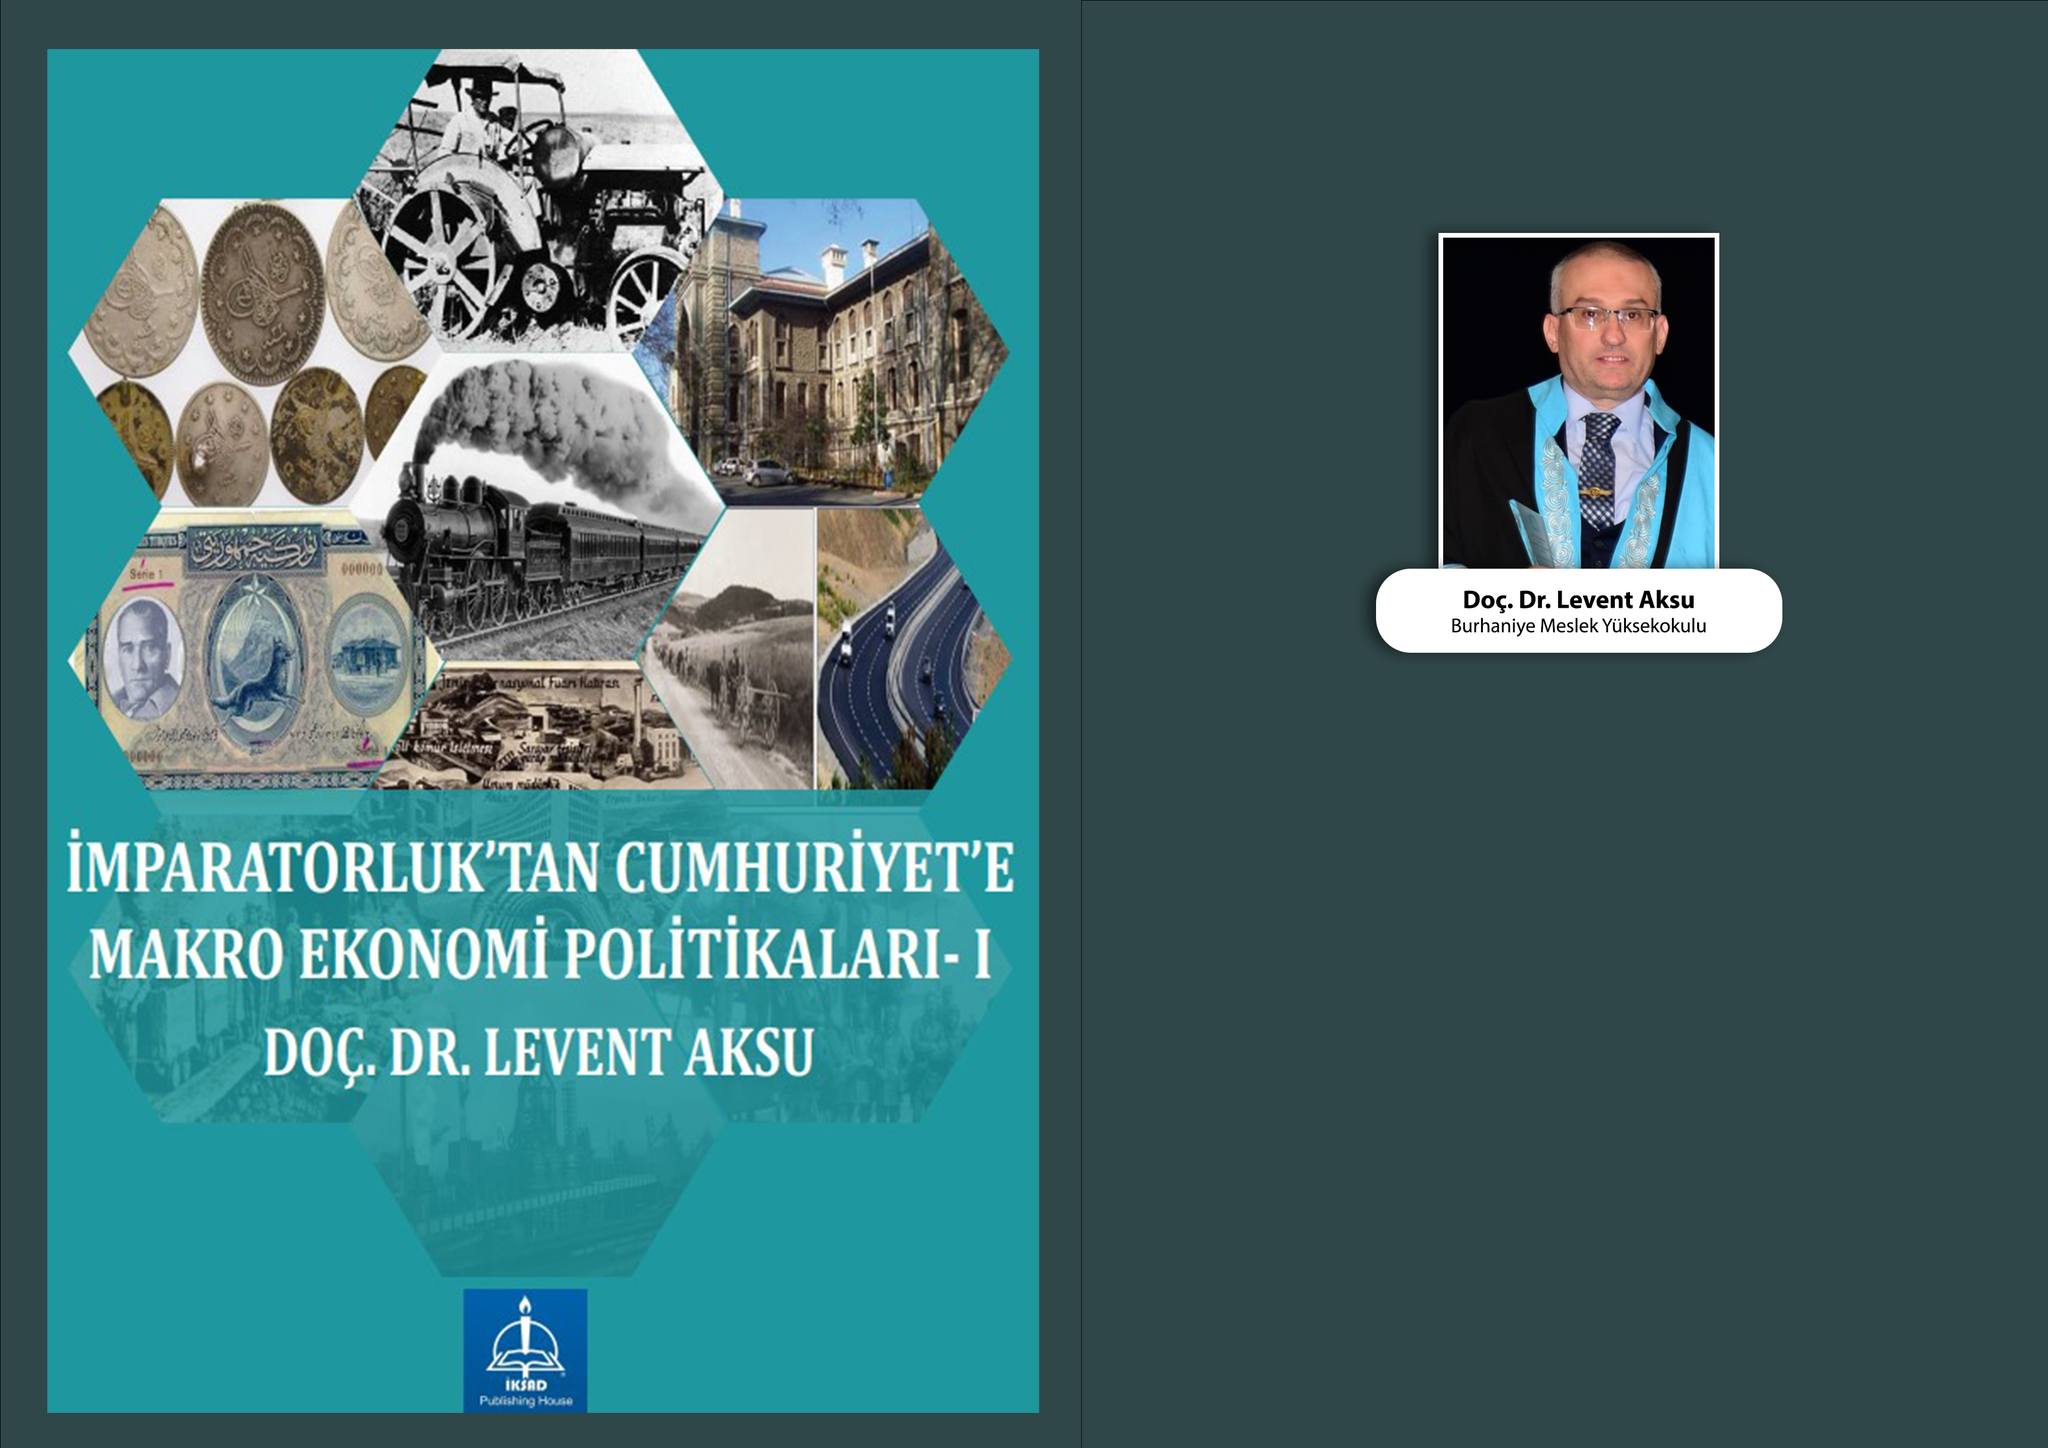 Balıkesir Üniversitesi'nde Görevli Akademisyen Yeni Makros Ekonomi Politikaları Üzerine Bir Eser Yayımladı